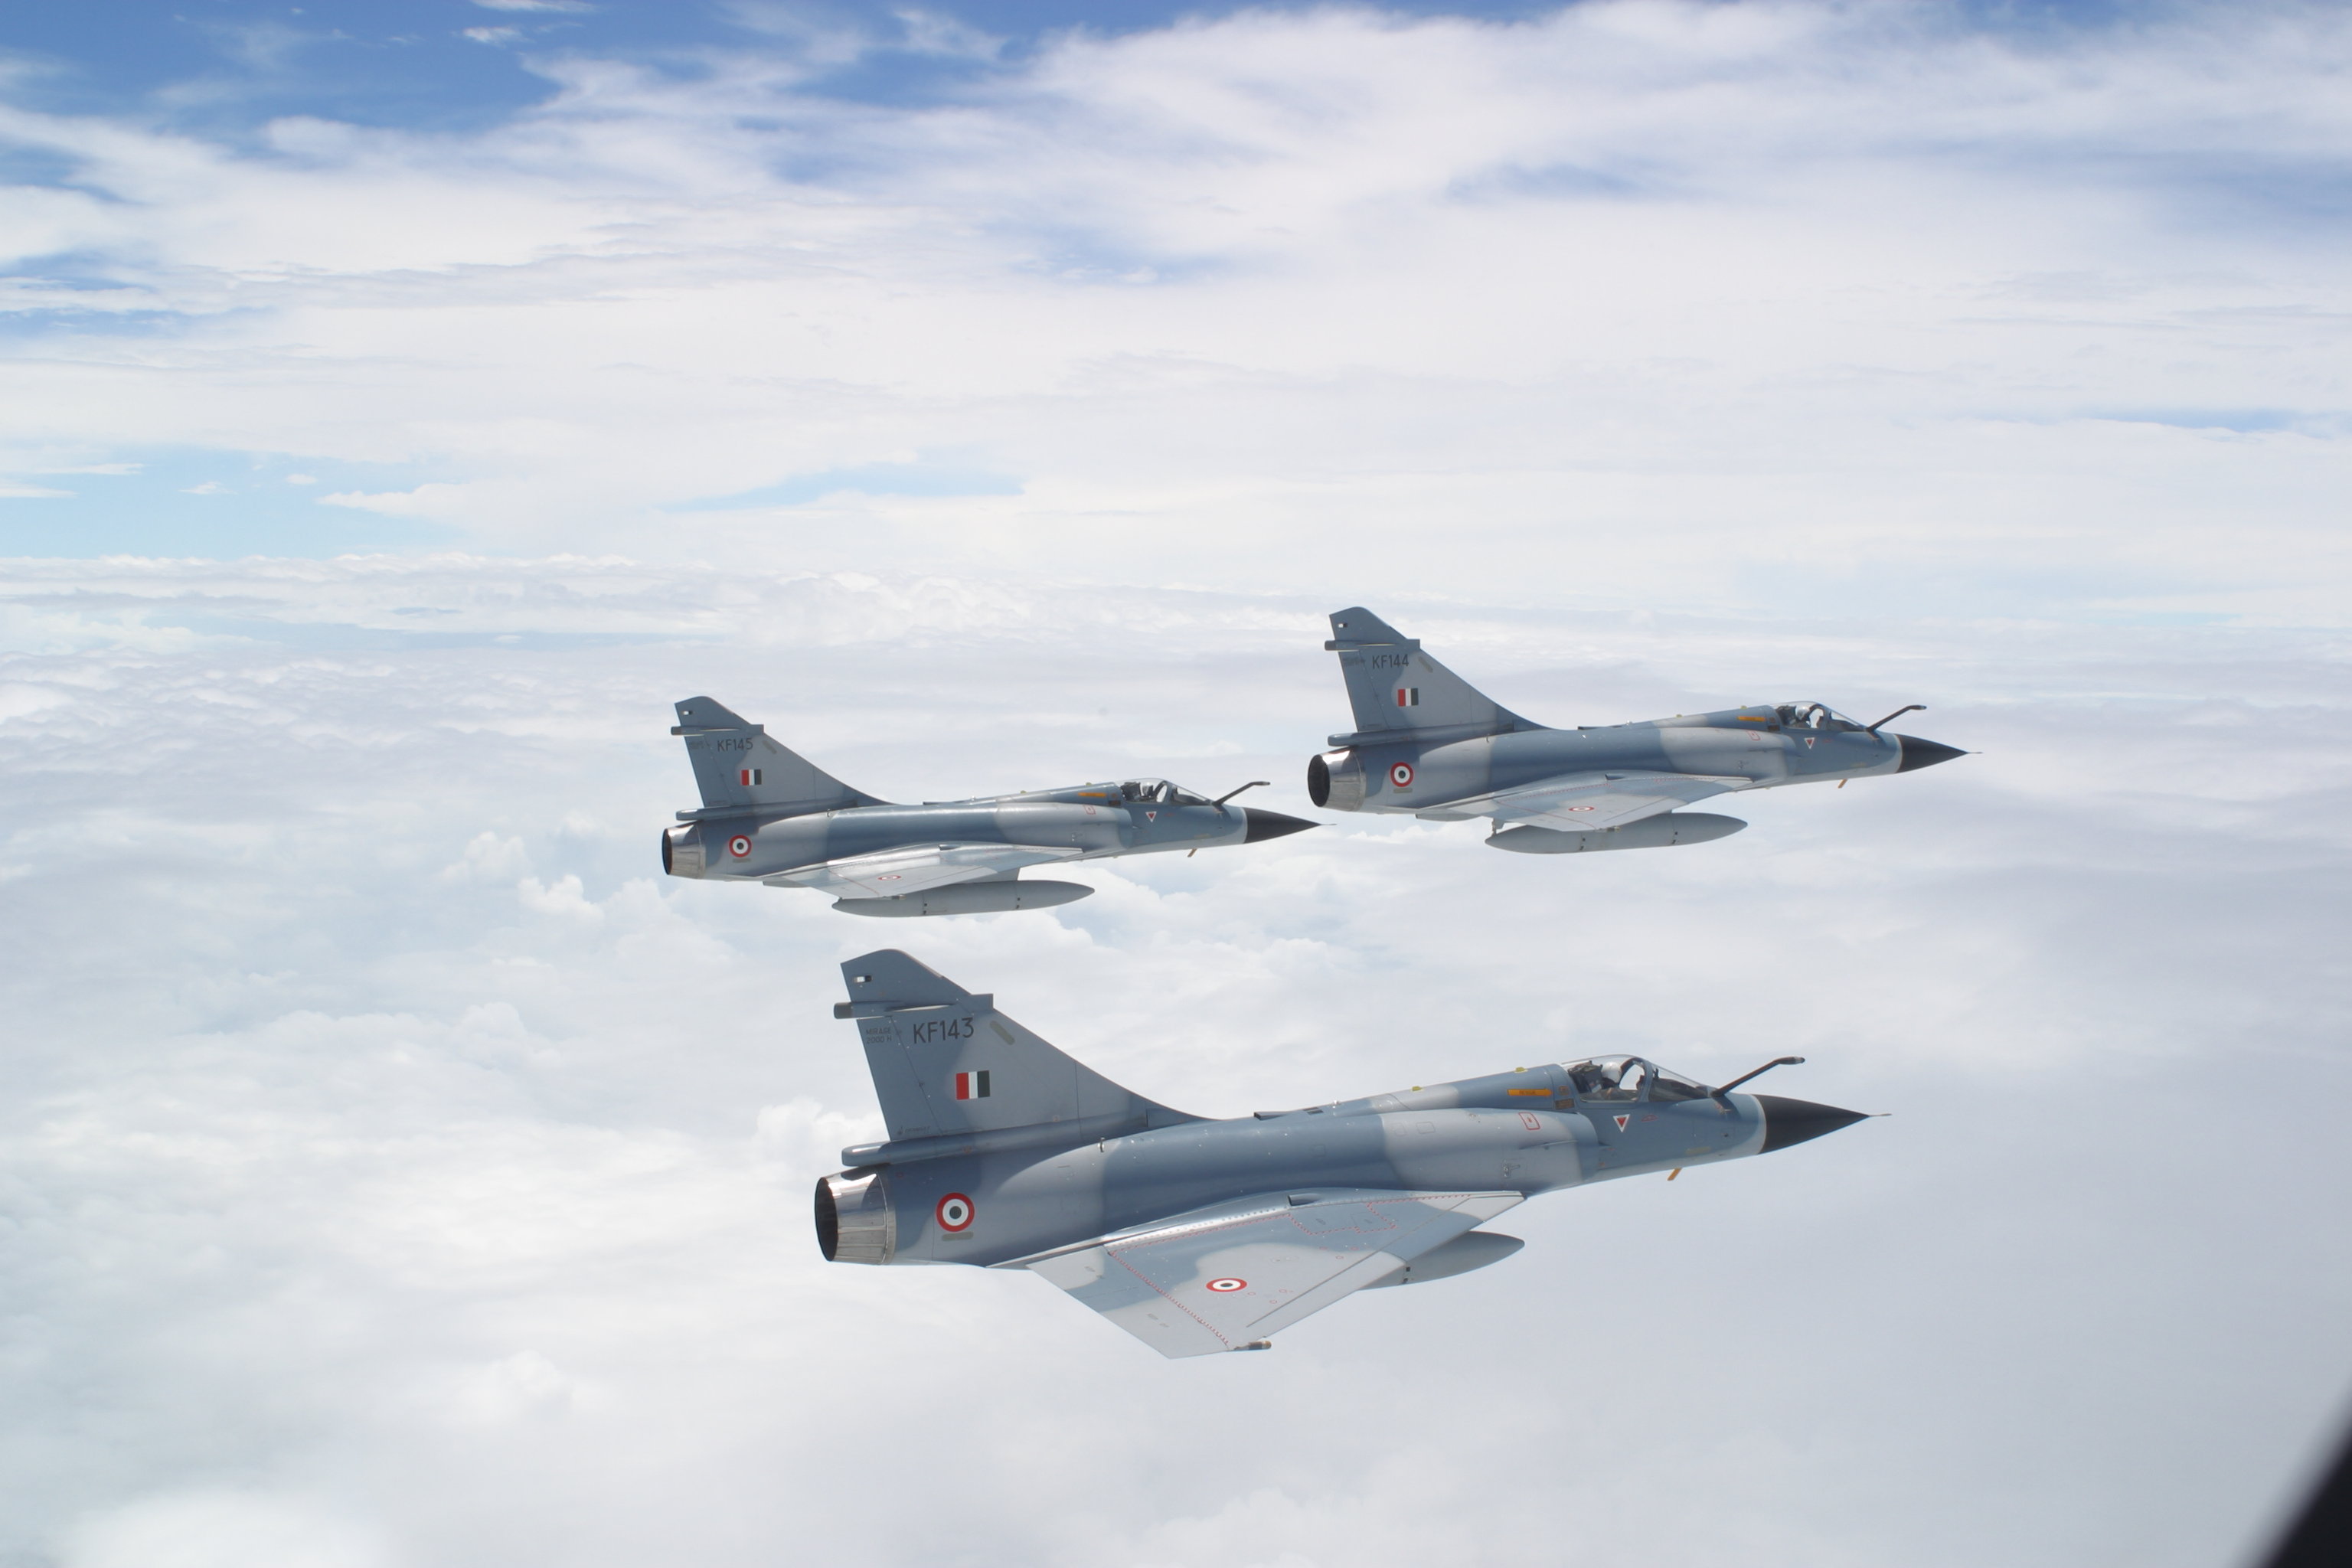 Dassault Mirage HD Wallpaper Background Image